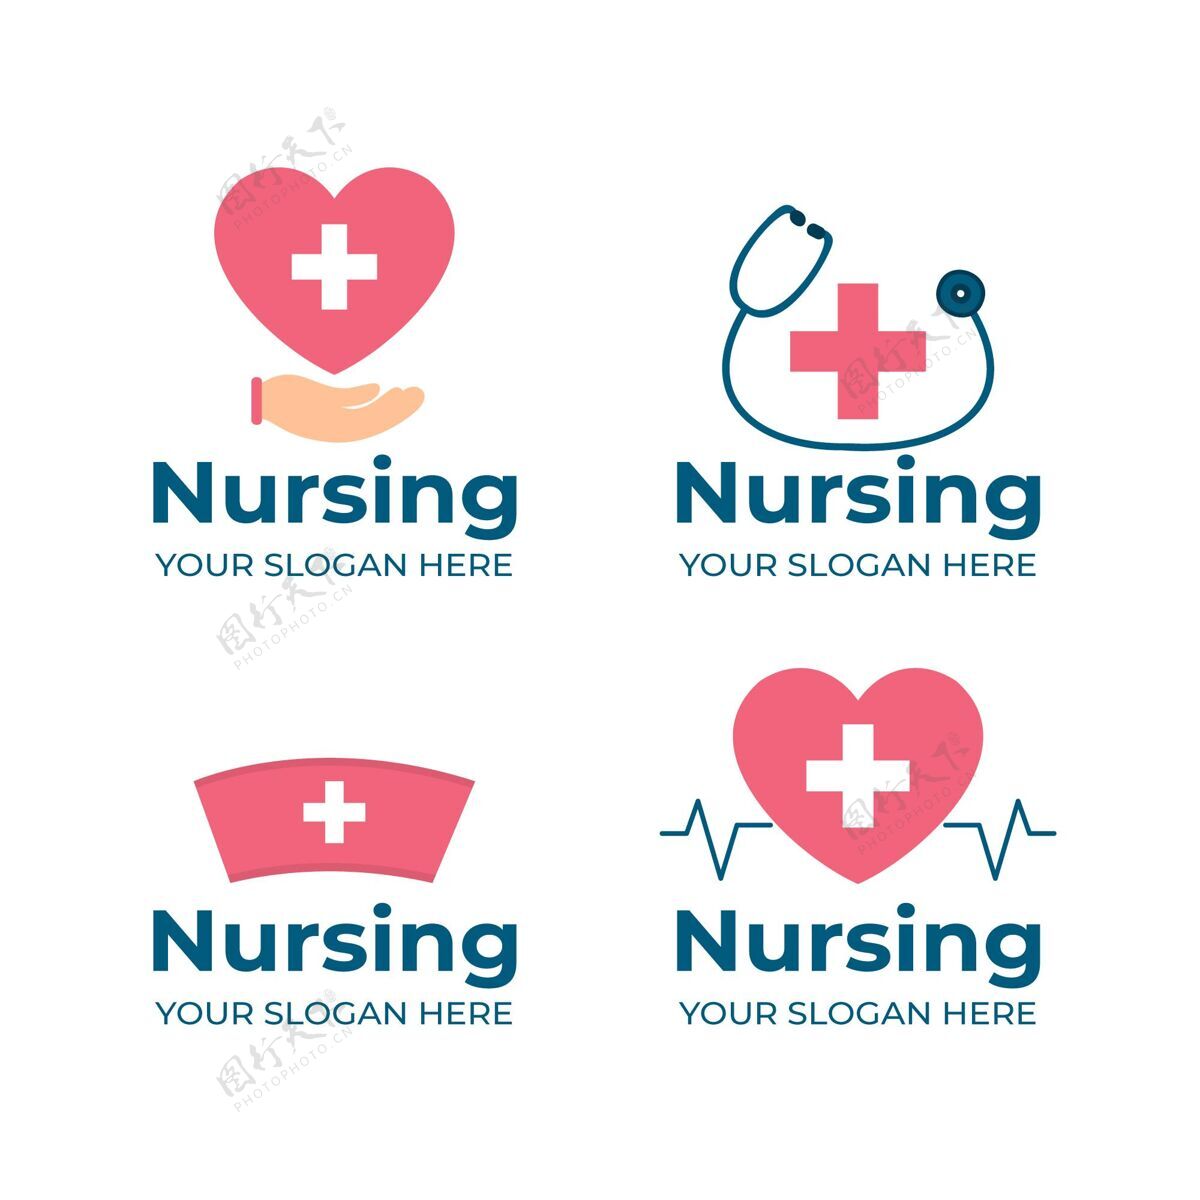 商业商标平面设计护士标志模板收集平面设计品牌标识